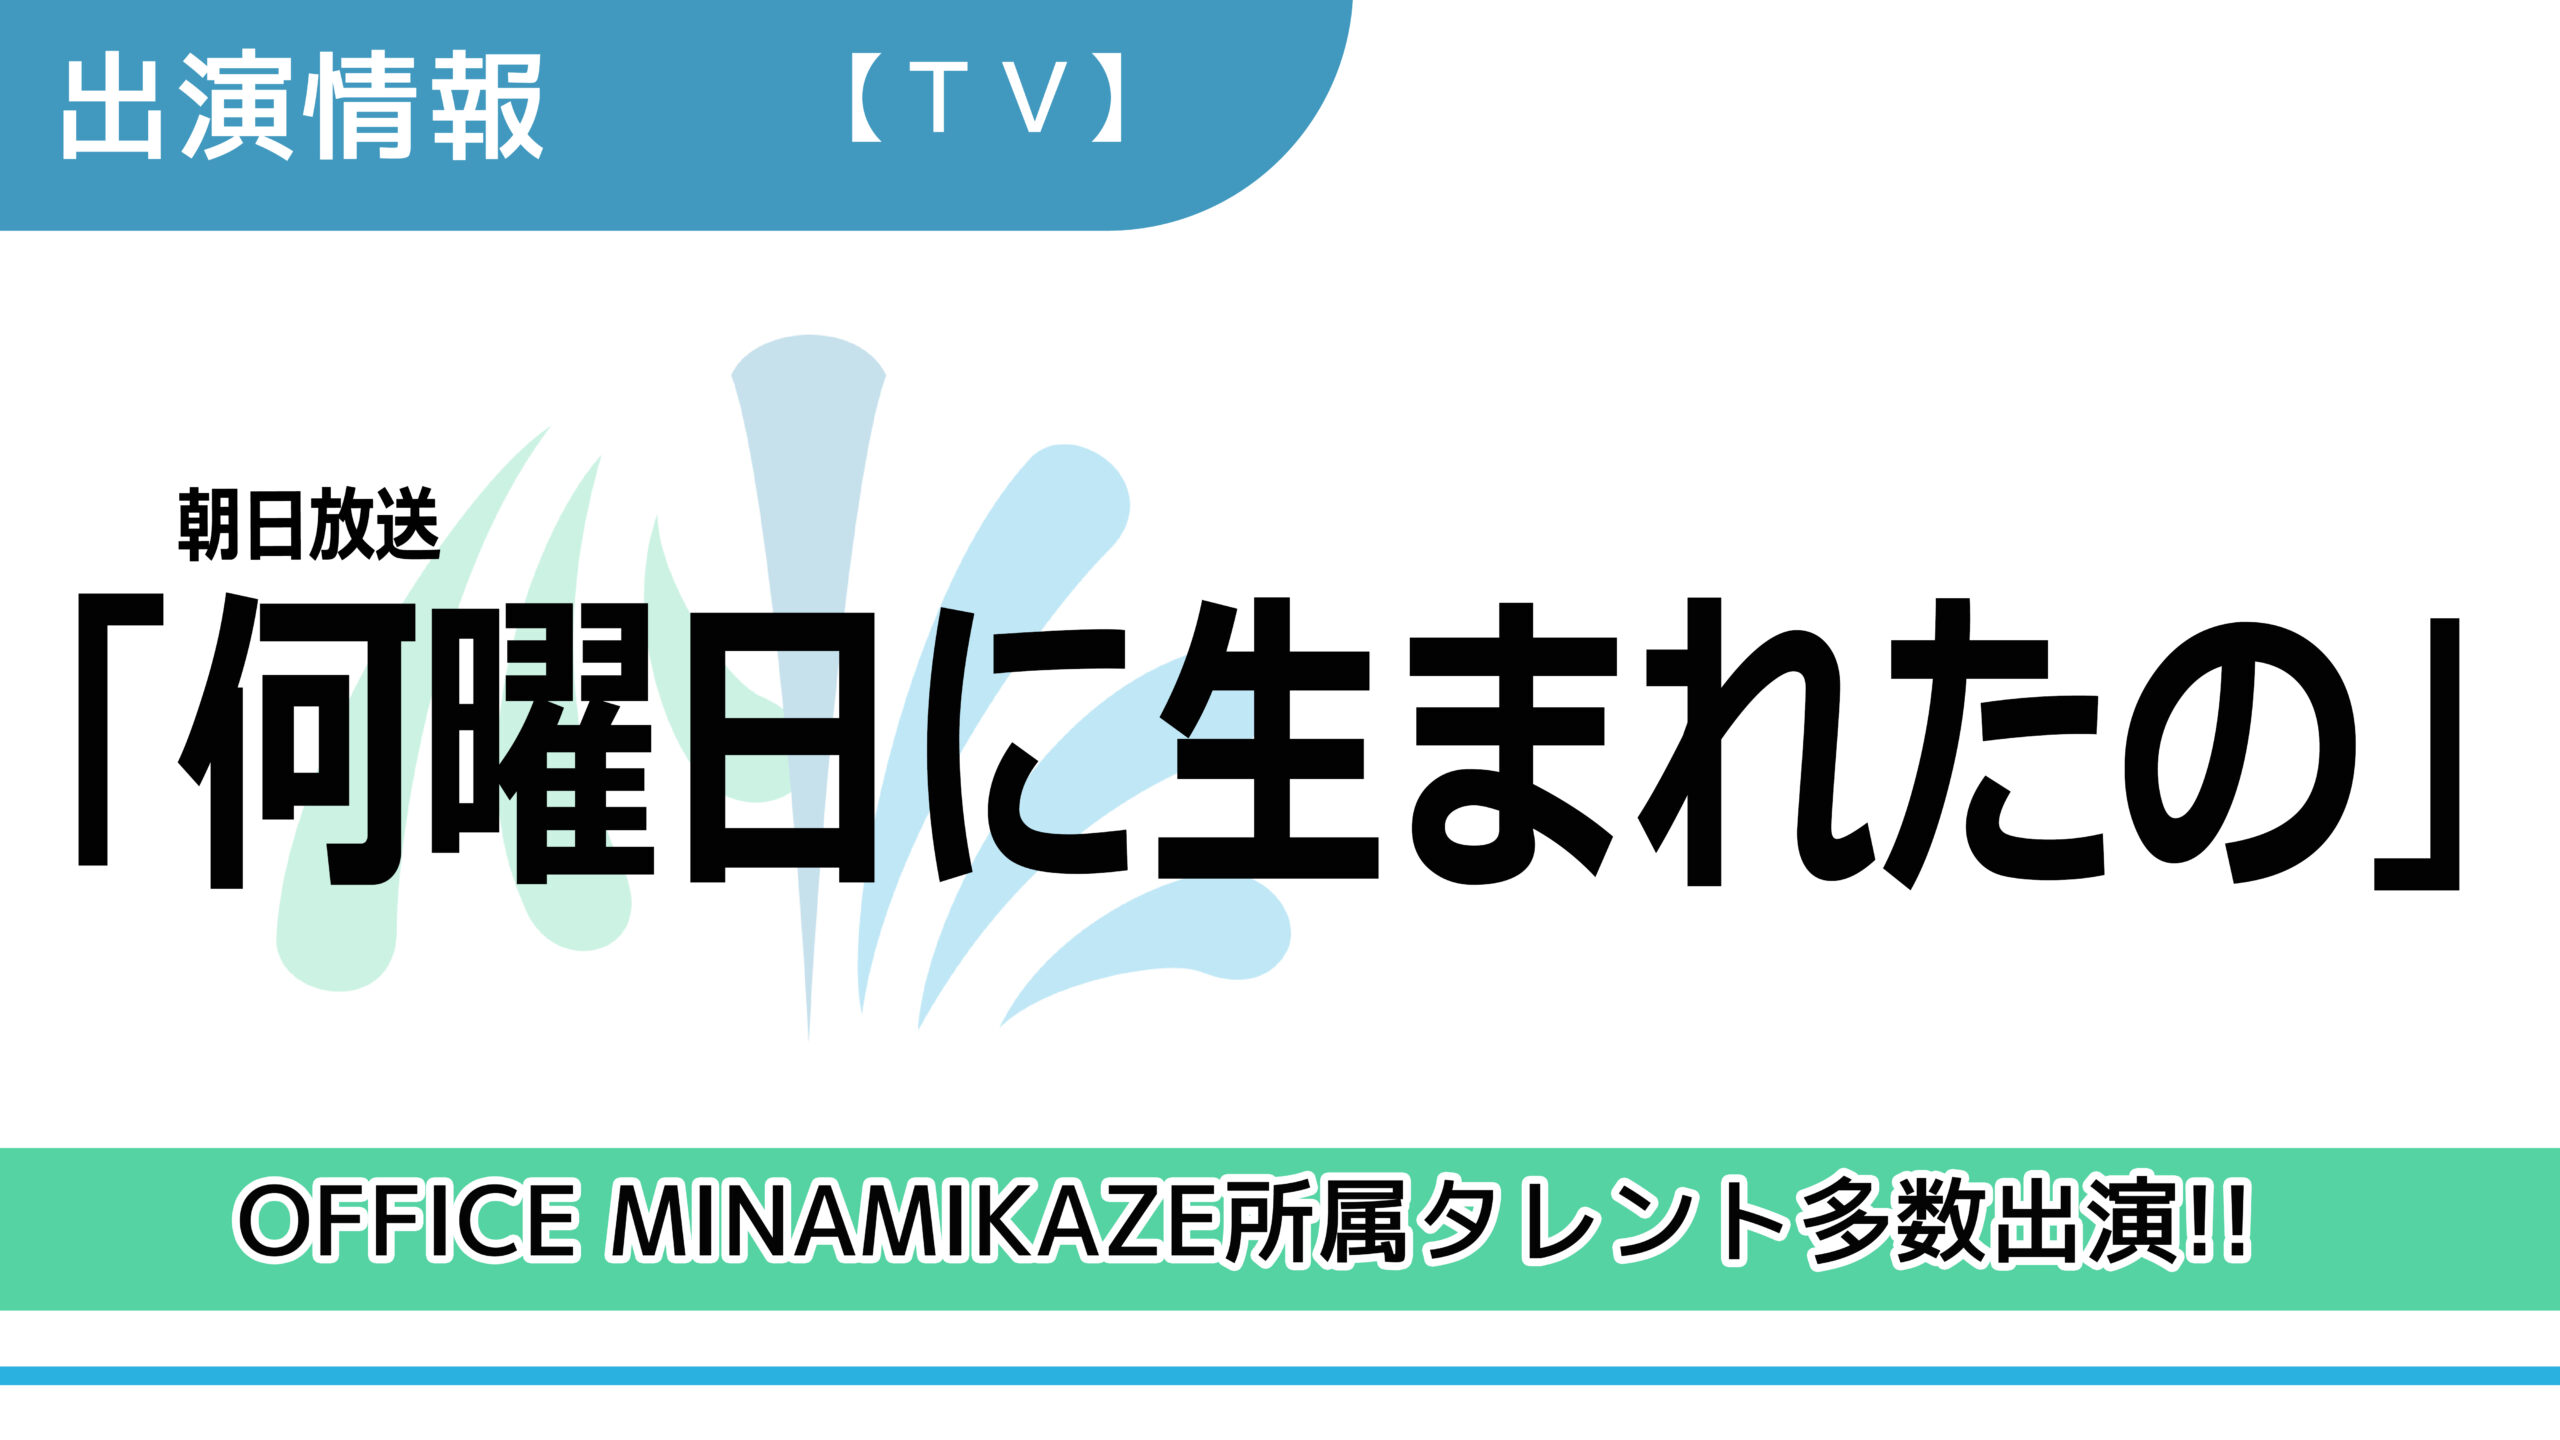 【出演情報】OFFICE MINAMIKAZE所属タレント多数出演 / 朝日放送「何曜日に生まれたの」